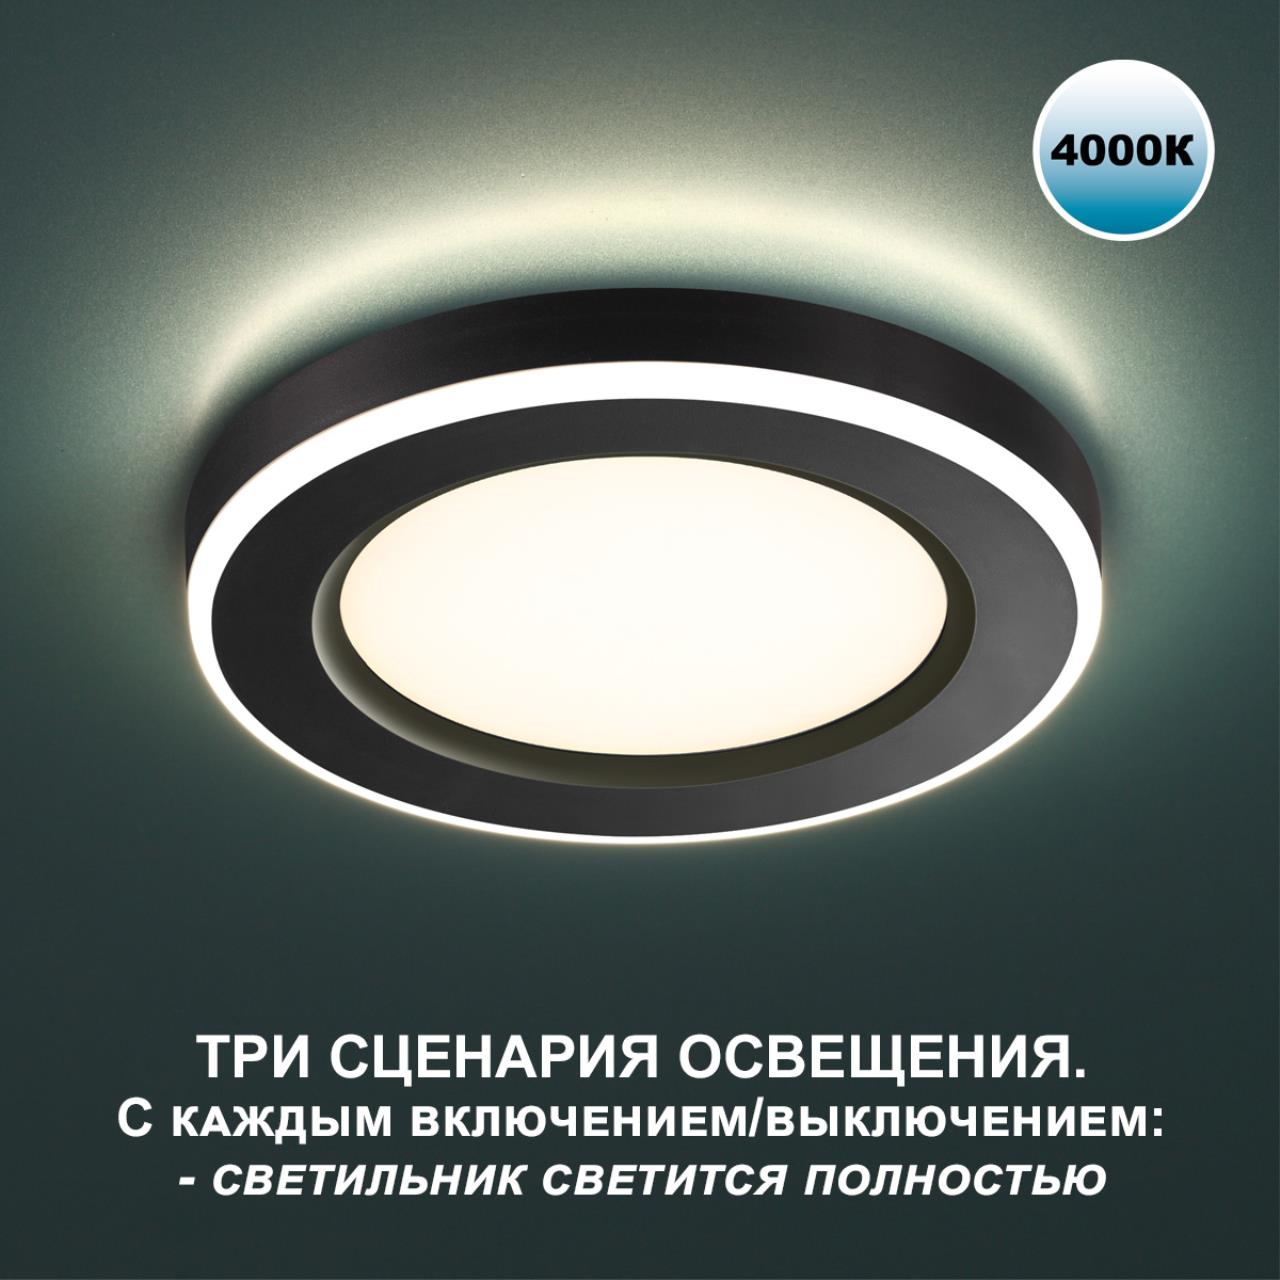 Трёхрежимный встраиваемый светодиодный светильник Novotech SPAN 359017